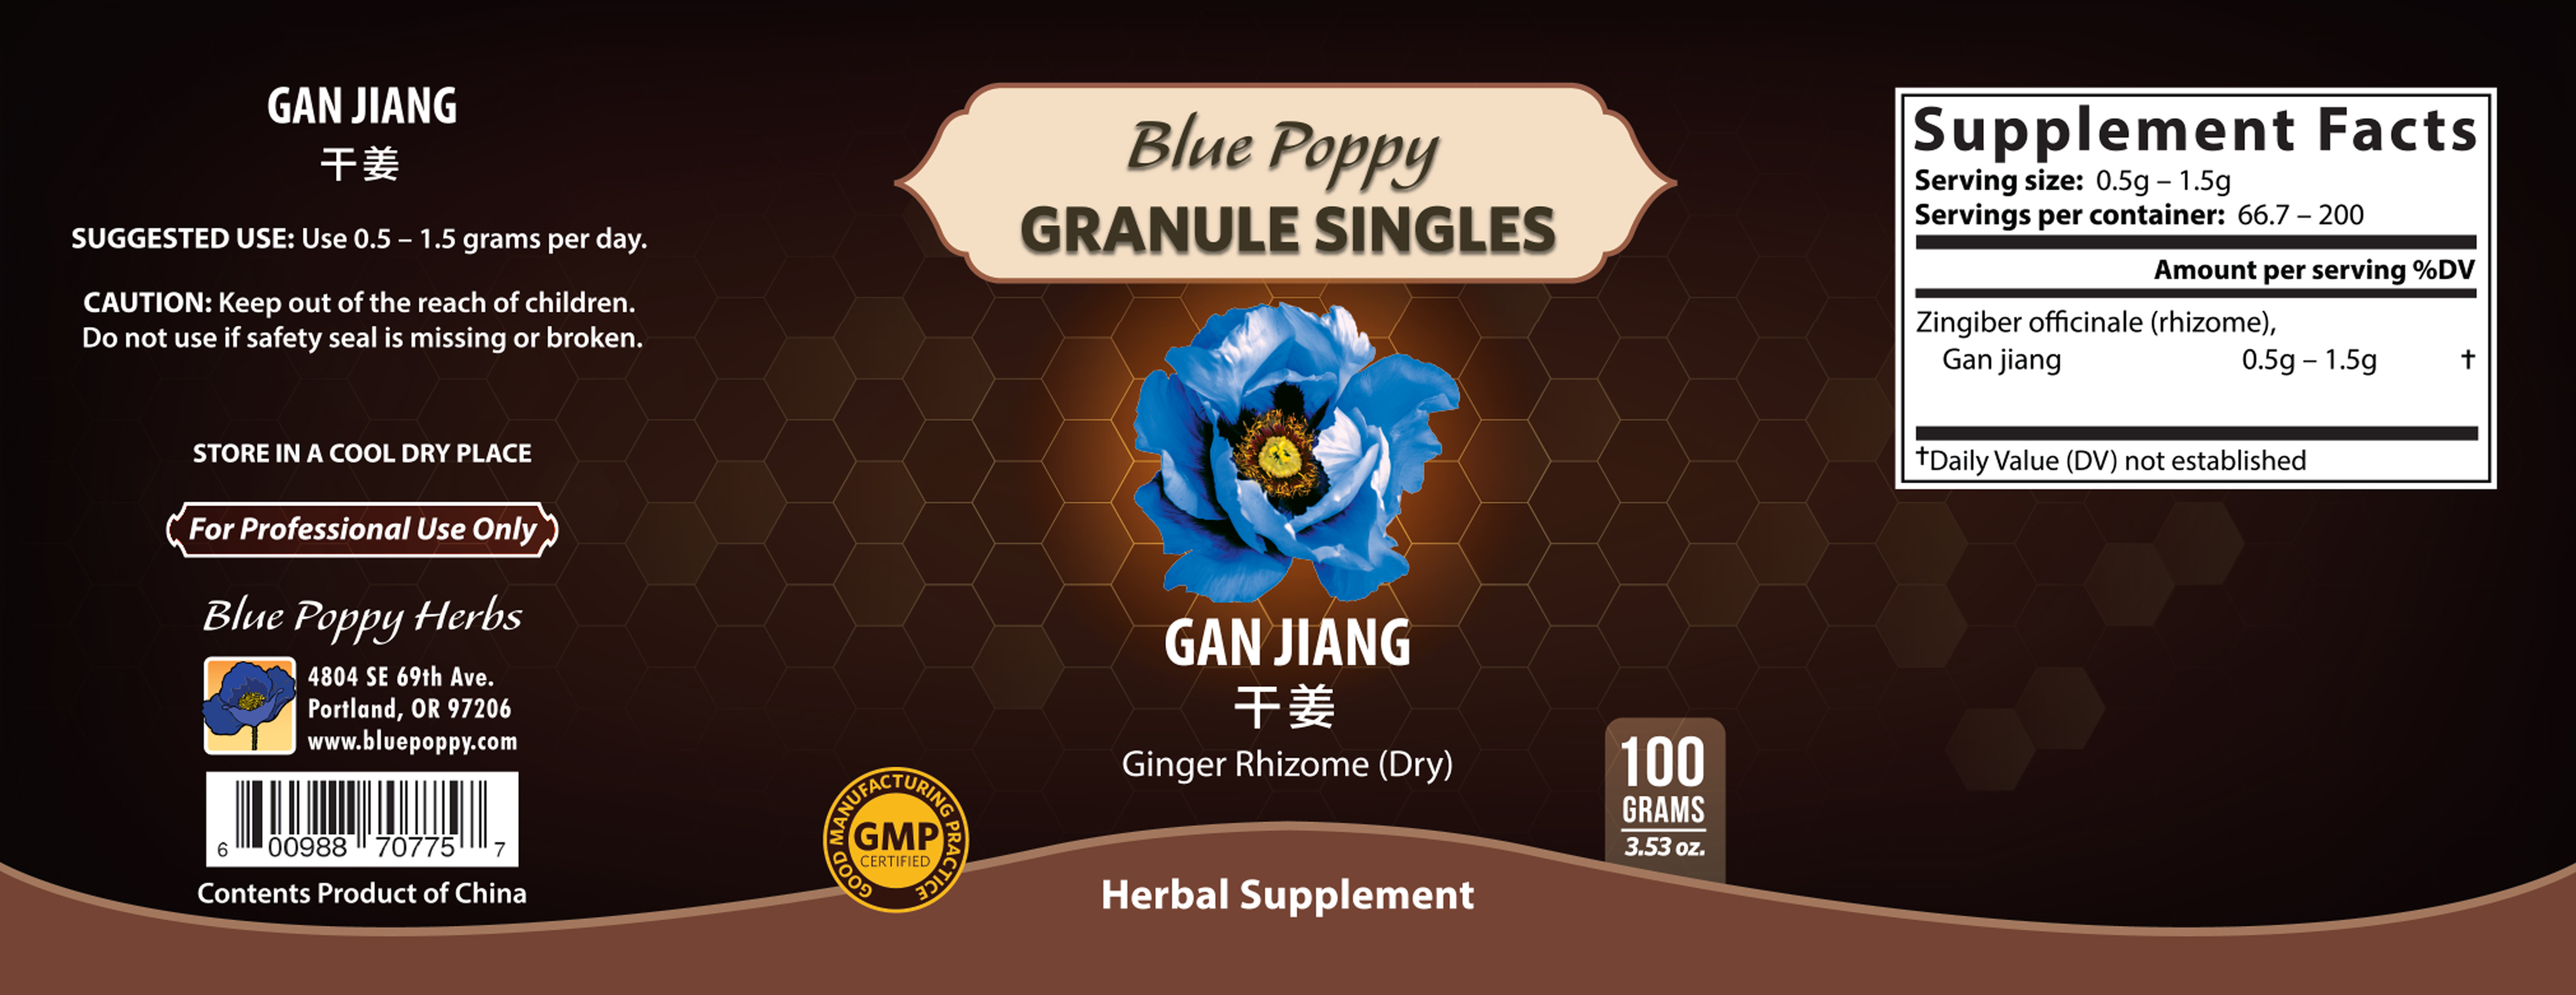 Gan Jiang Granules